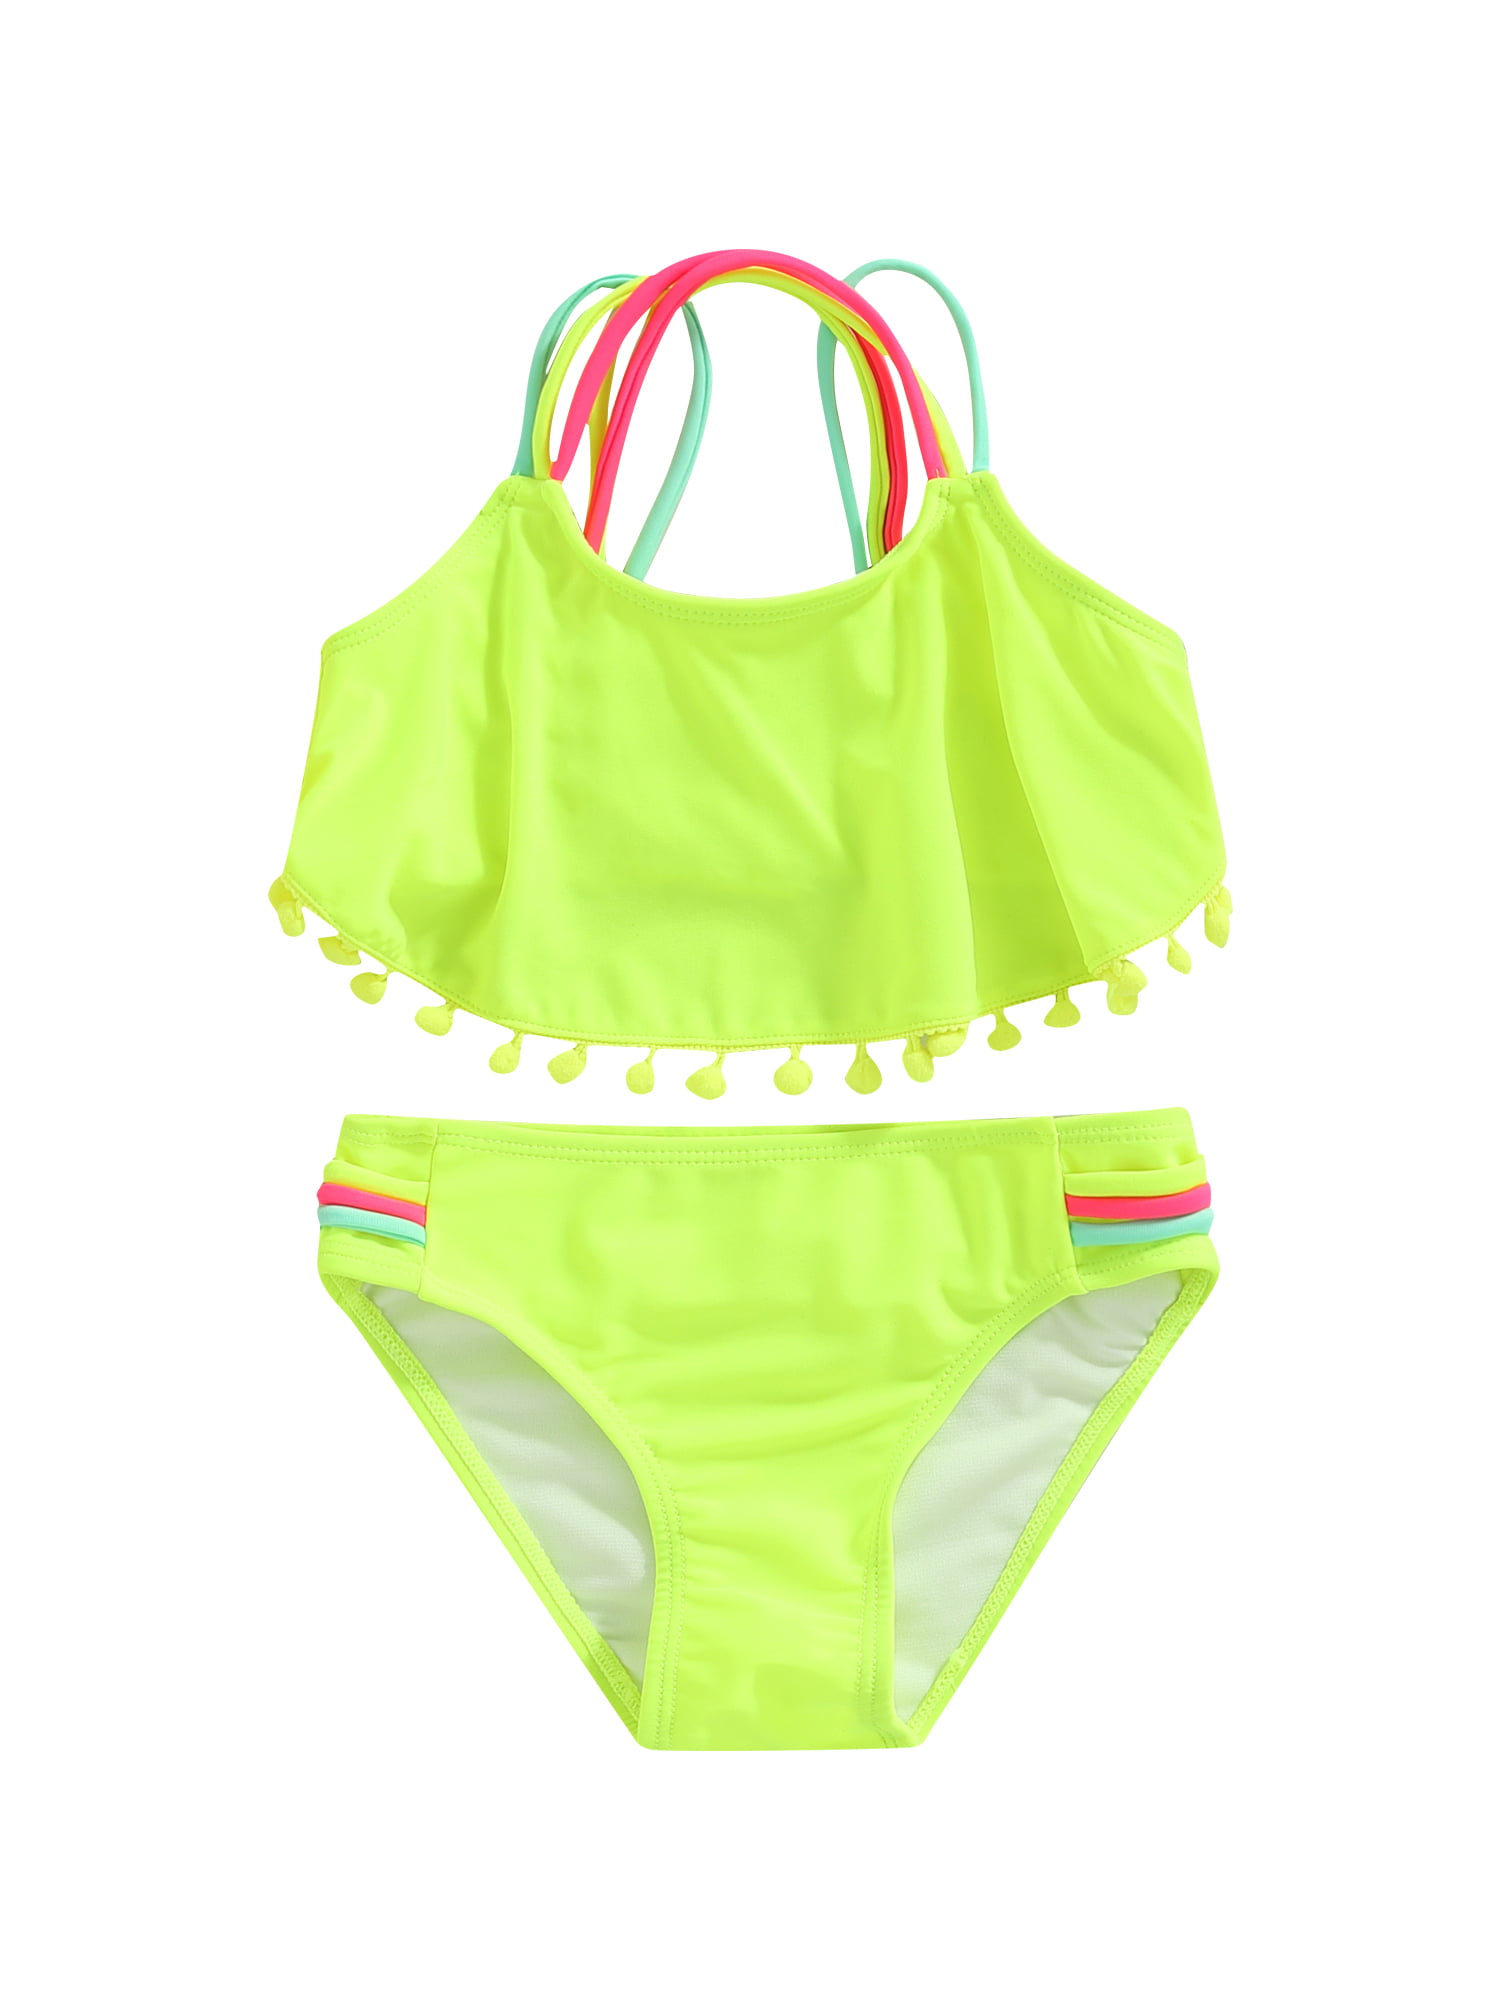 JYYYBF Children Summer Split Swimsuit Set Girls Sleeveless Backless ...